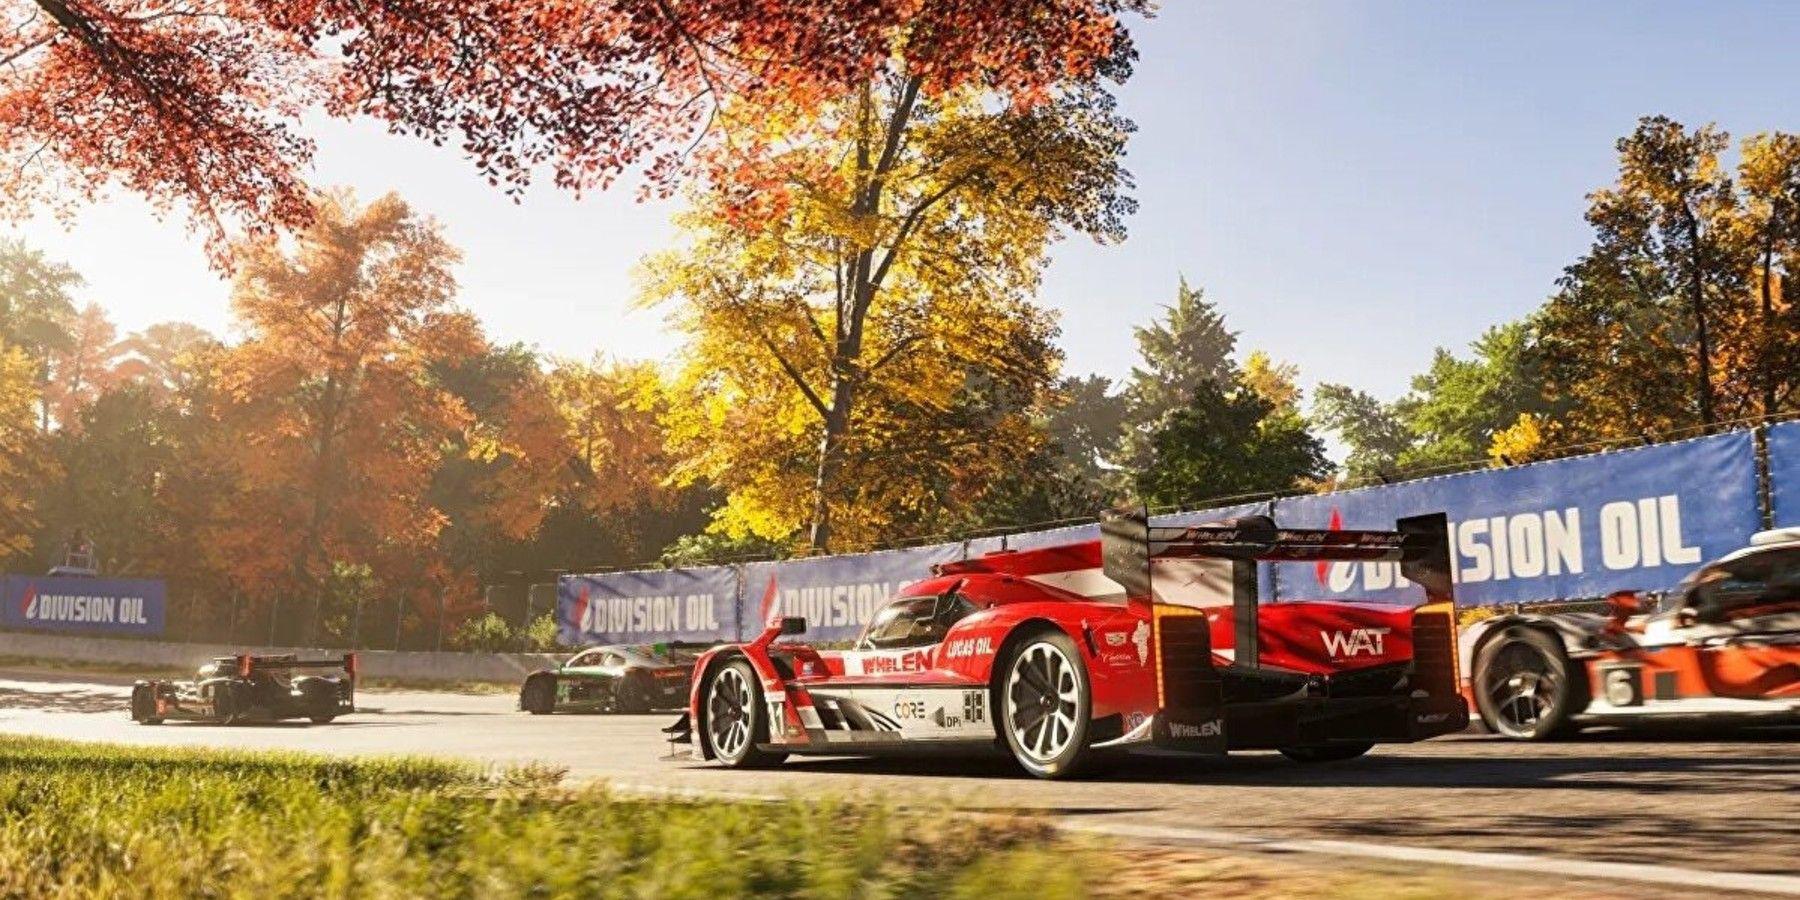 Rumor: data de lançamento do Forza Motorsport pode ser adiada